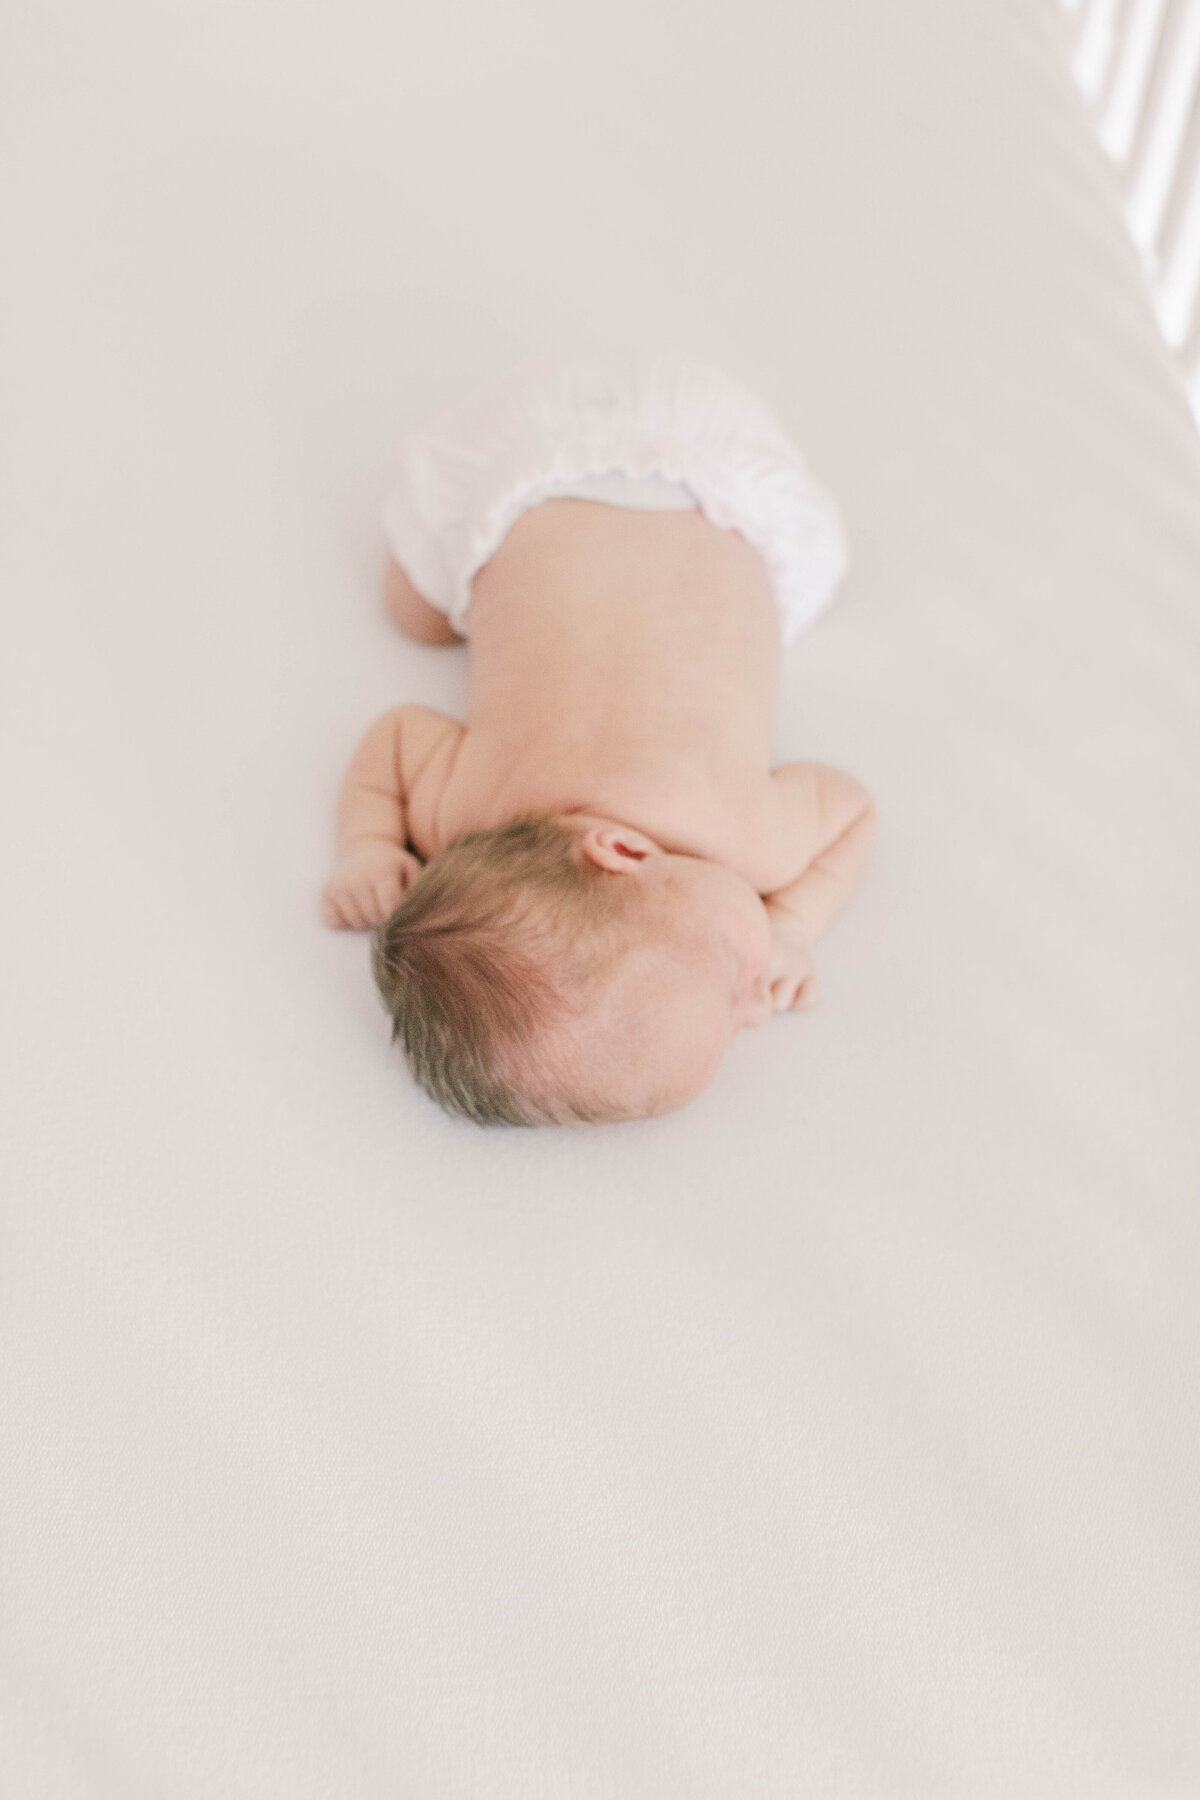 greensboro newborn photographer-12